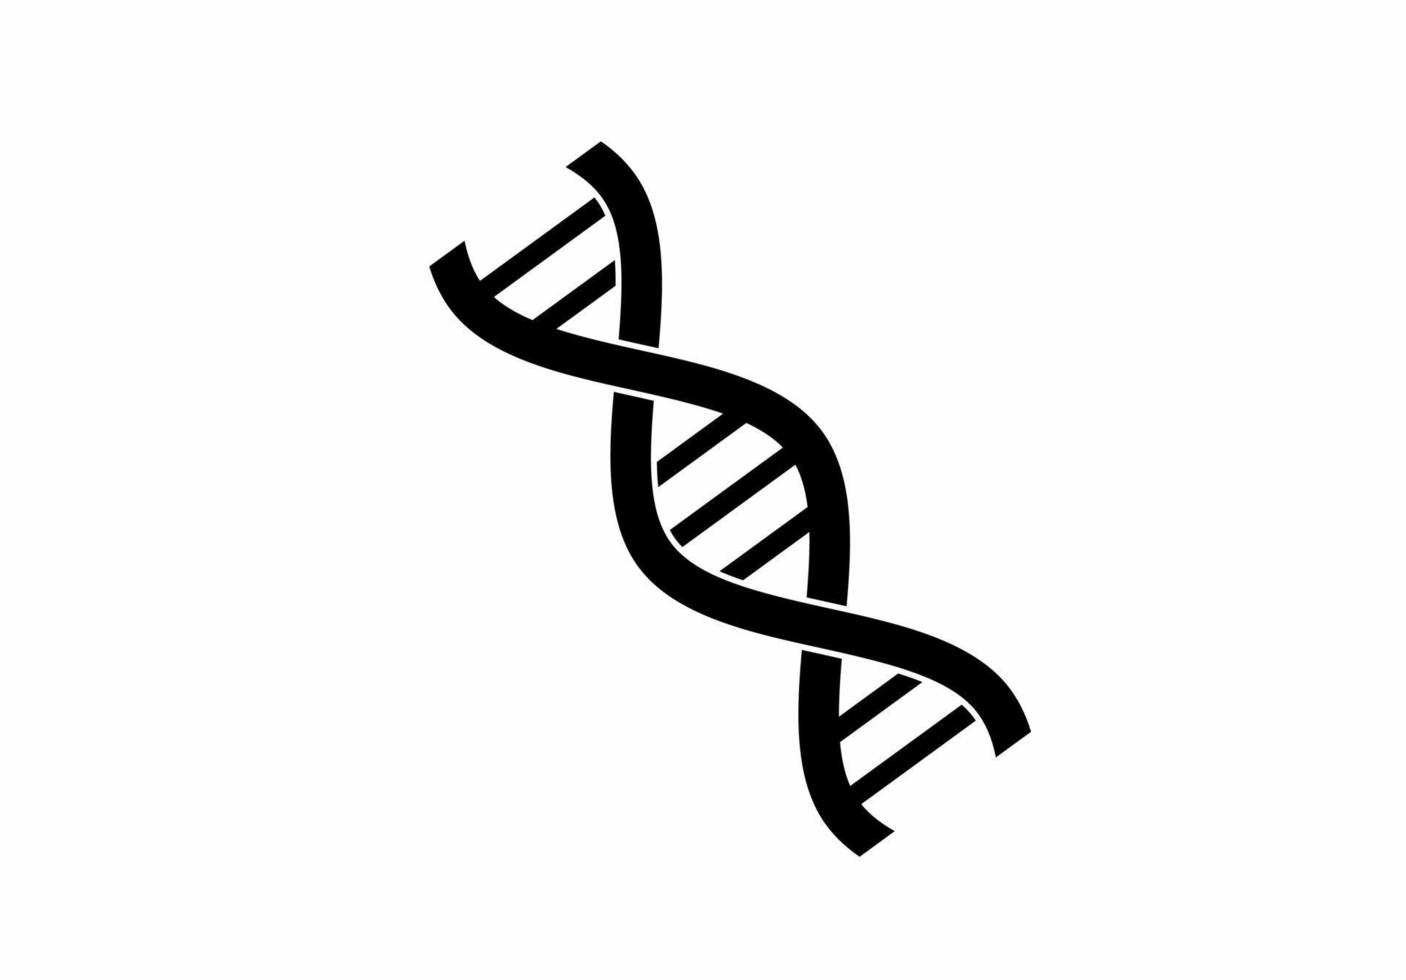 DNA-Helix-Symbol isoliert auf weißem Hintergrund vektor